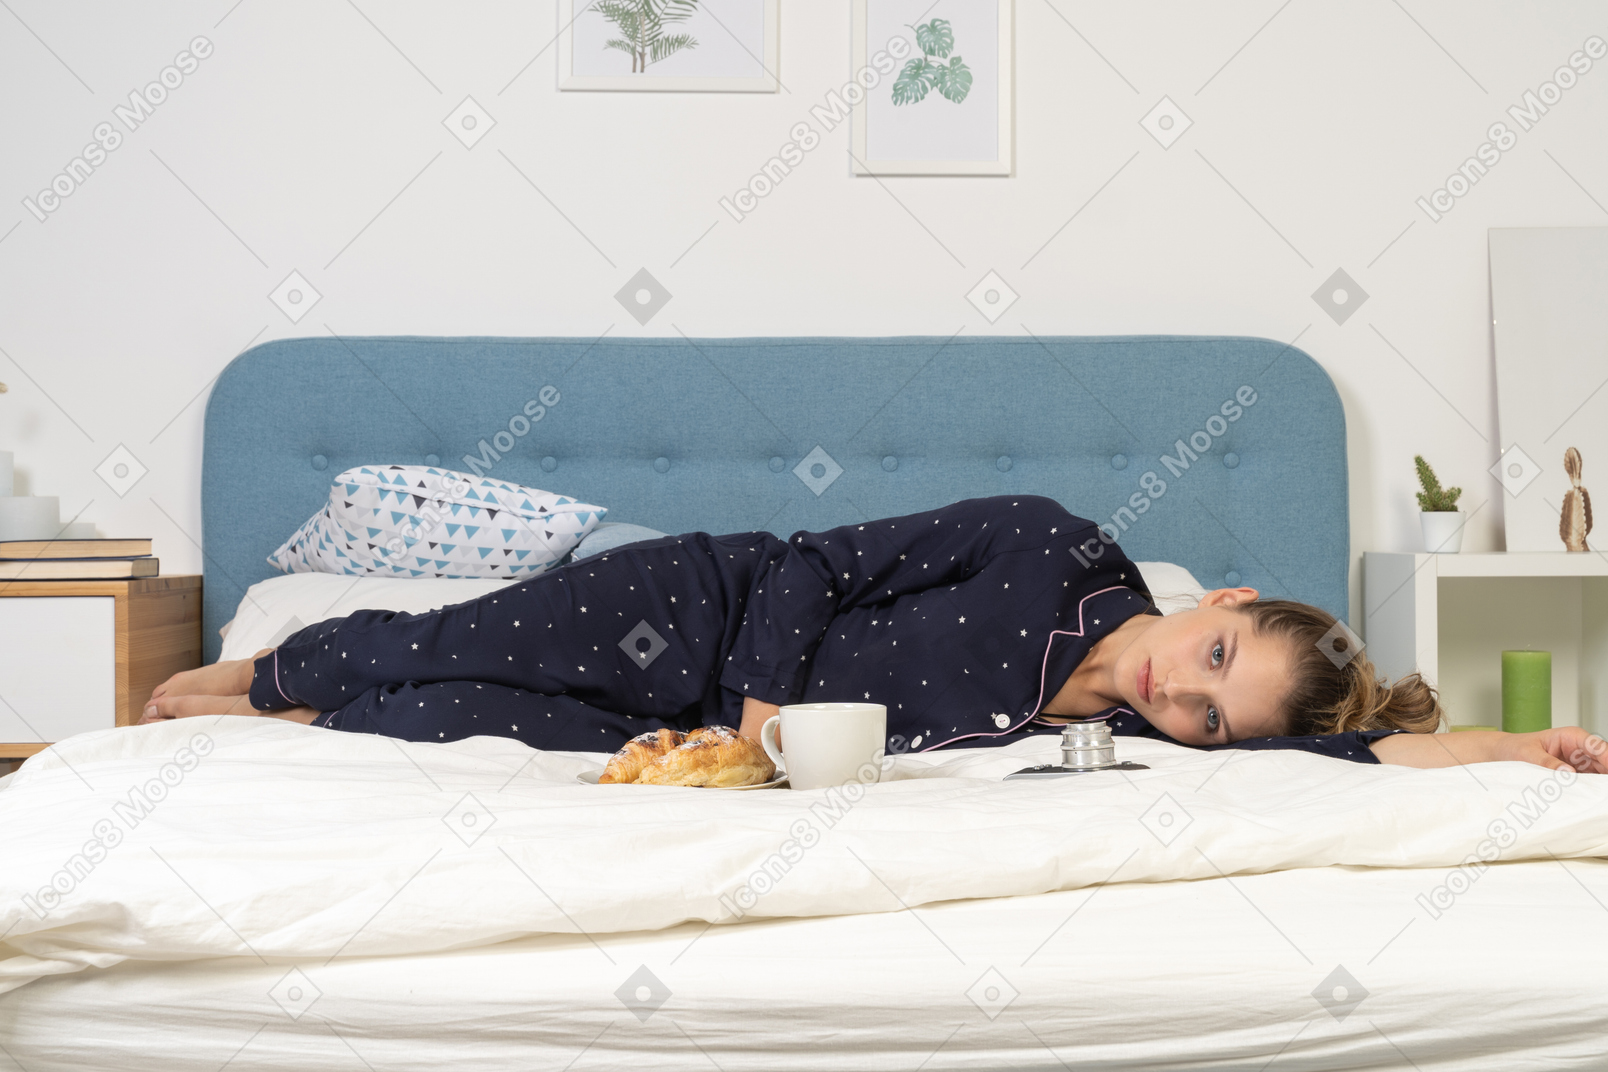 Vue de face d'une pose au lit jeune femme prenant son petit déjeuner